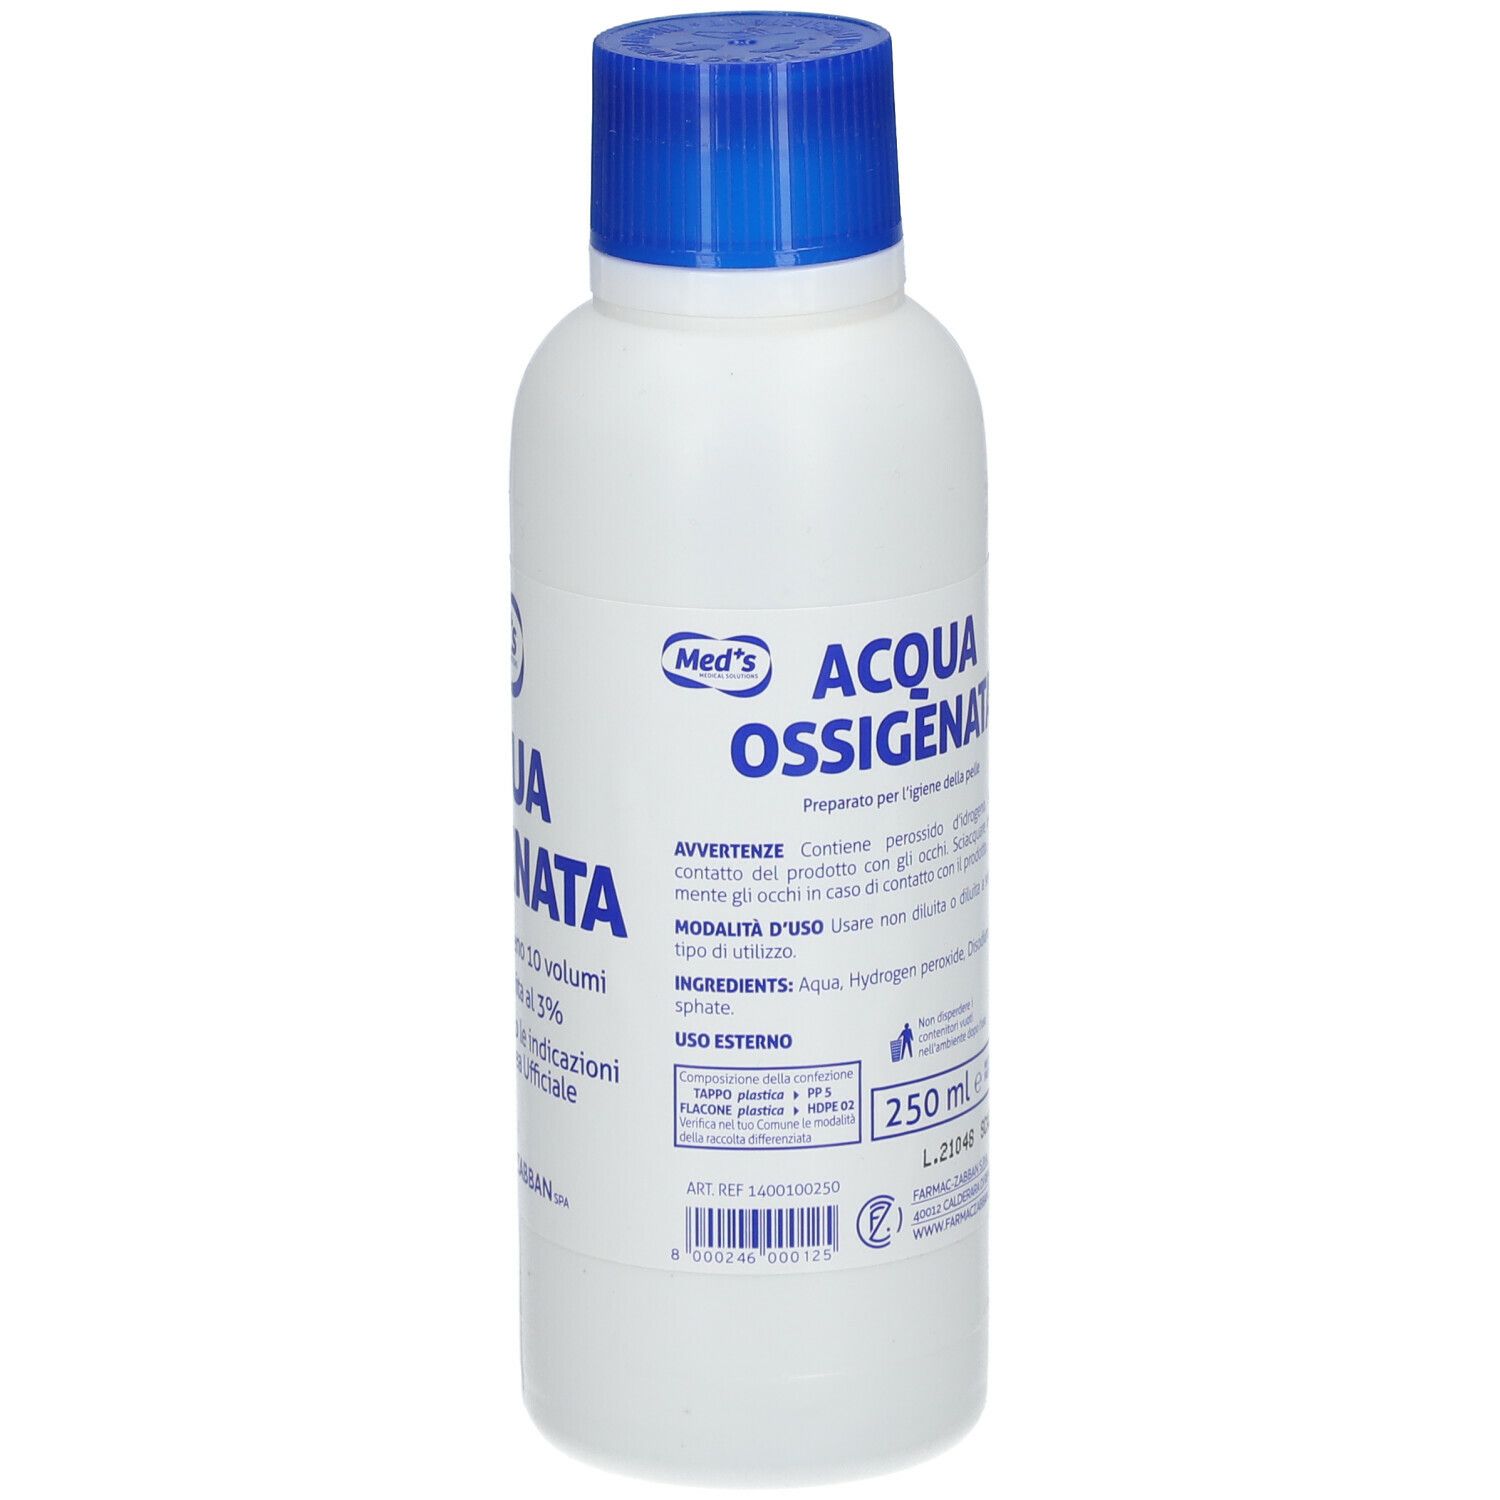 Med's Acqua Ossigenata